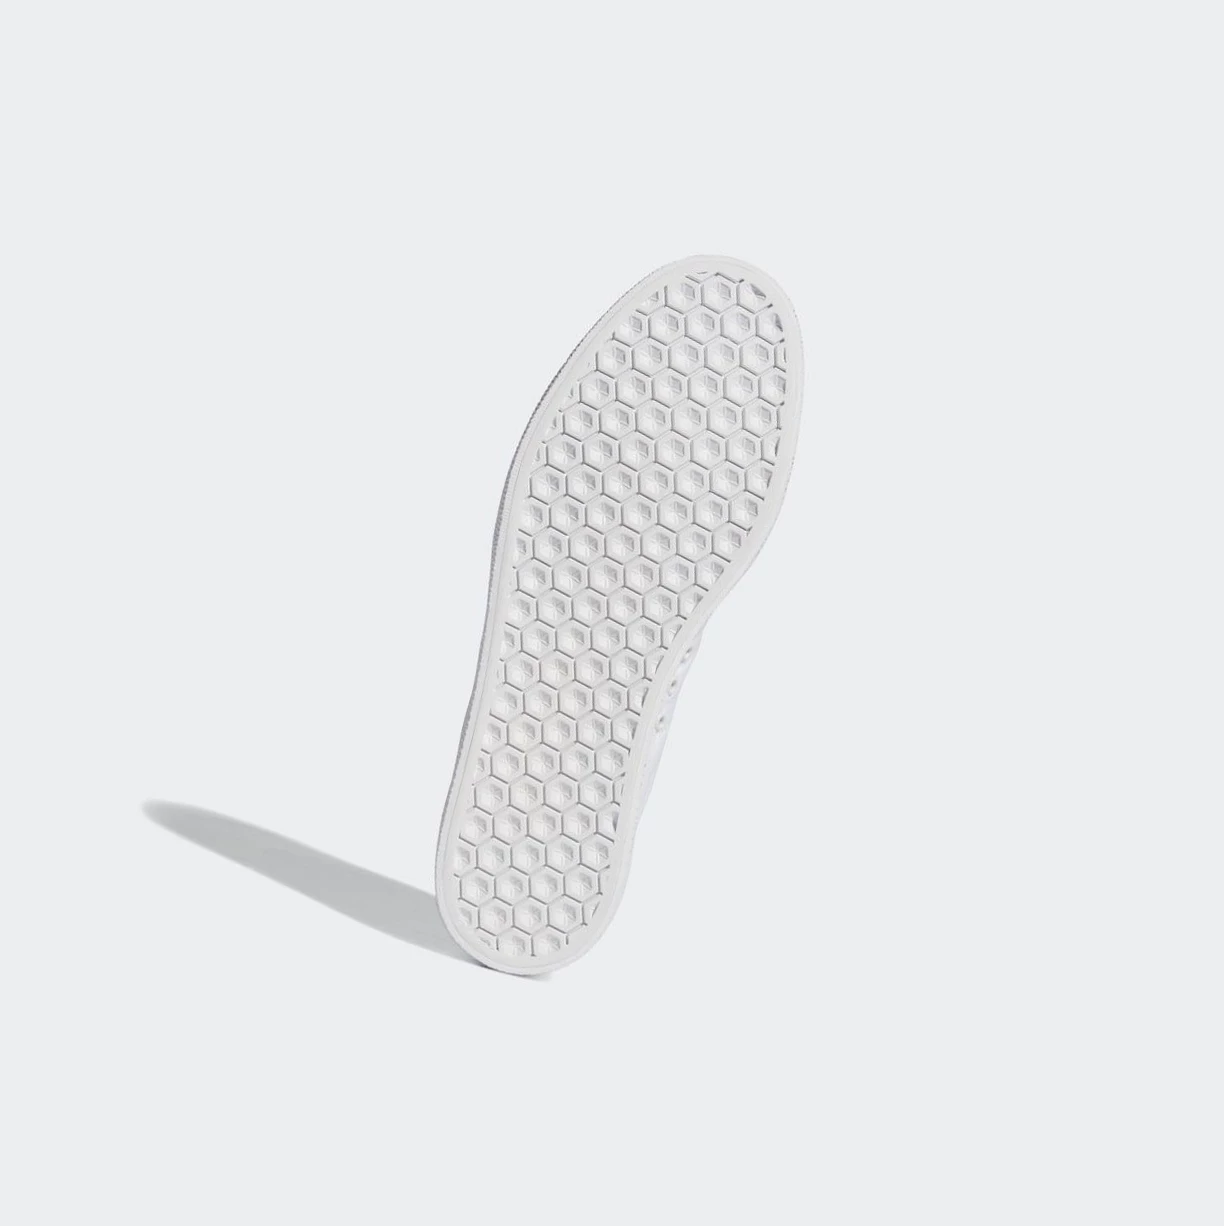 Originálne Topánky Adidas 3MC Panske Biele | 765SKJINCAQ